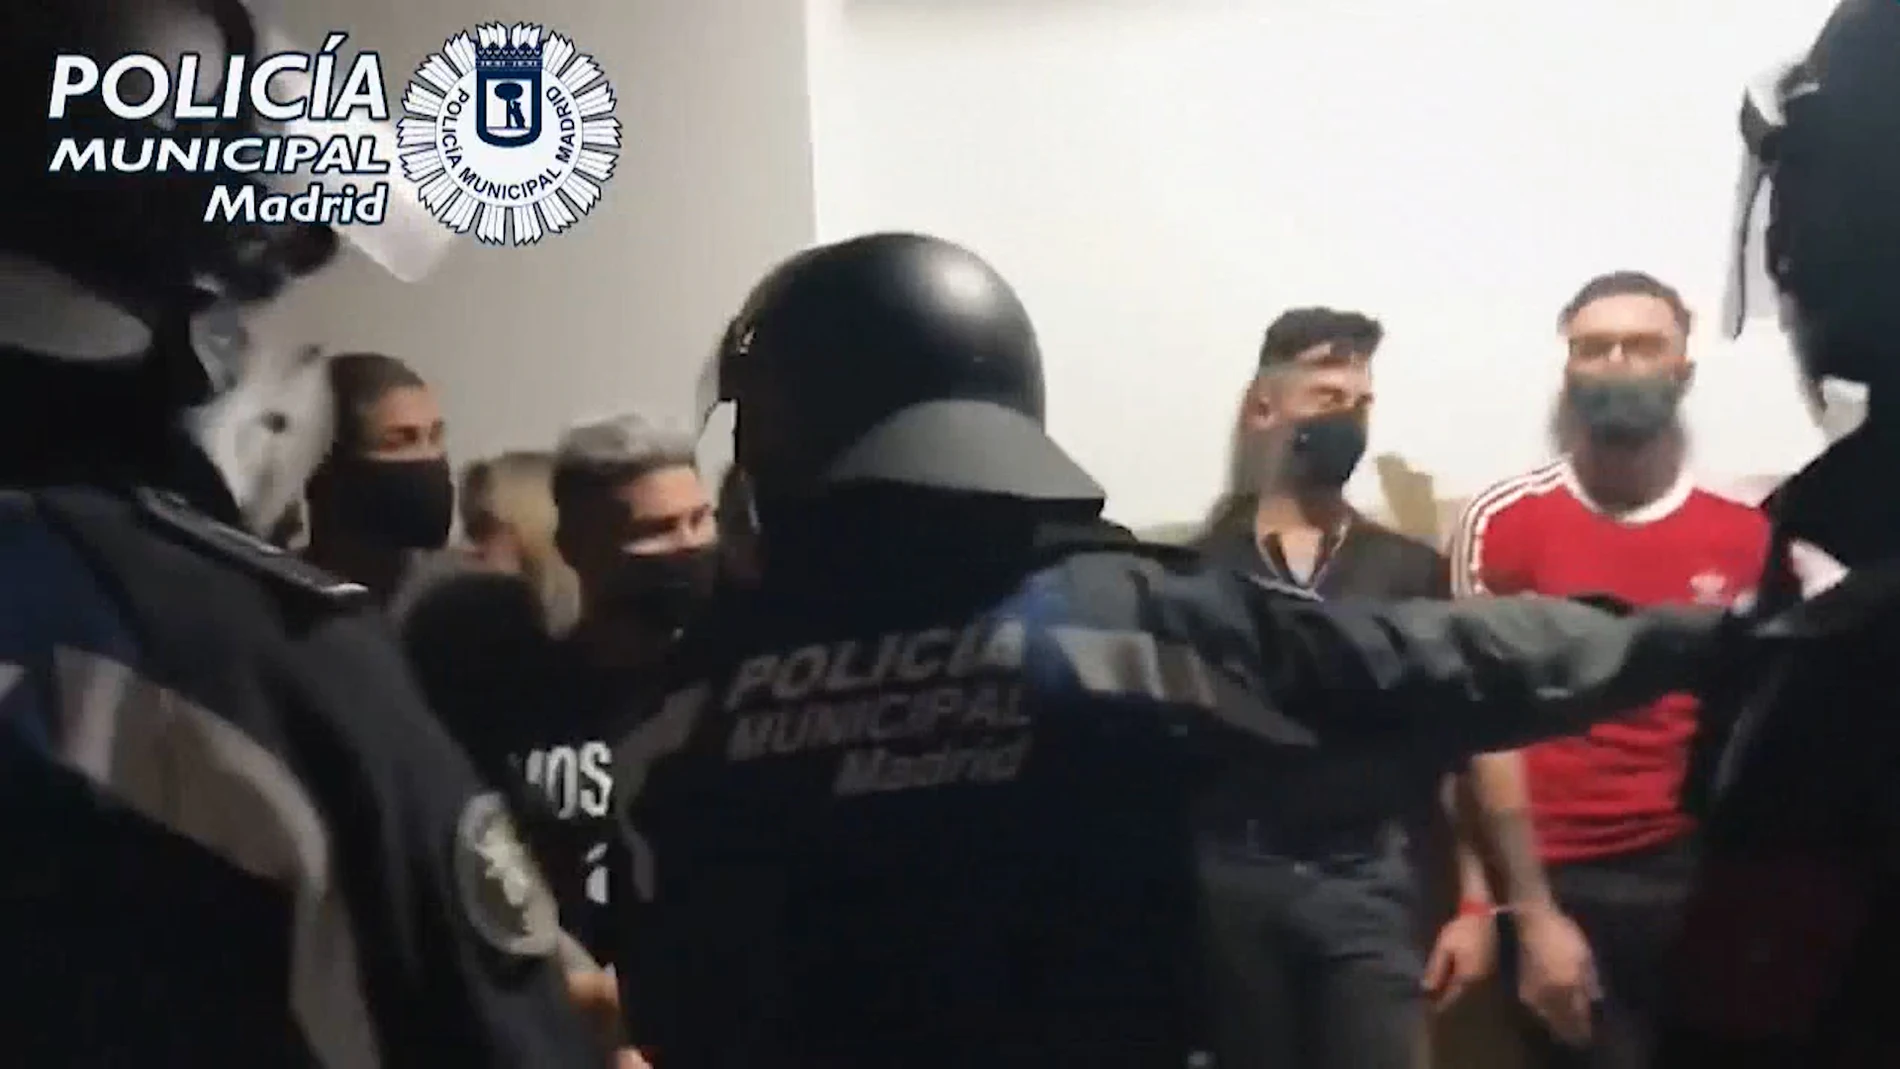 Fiestas ilegales en Madrid que la Policia Municipal ha desarticulado este fin de semana